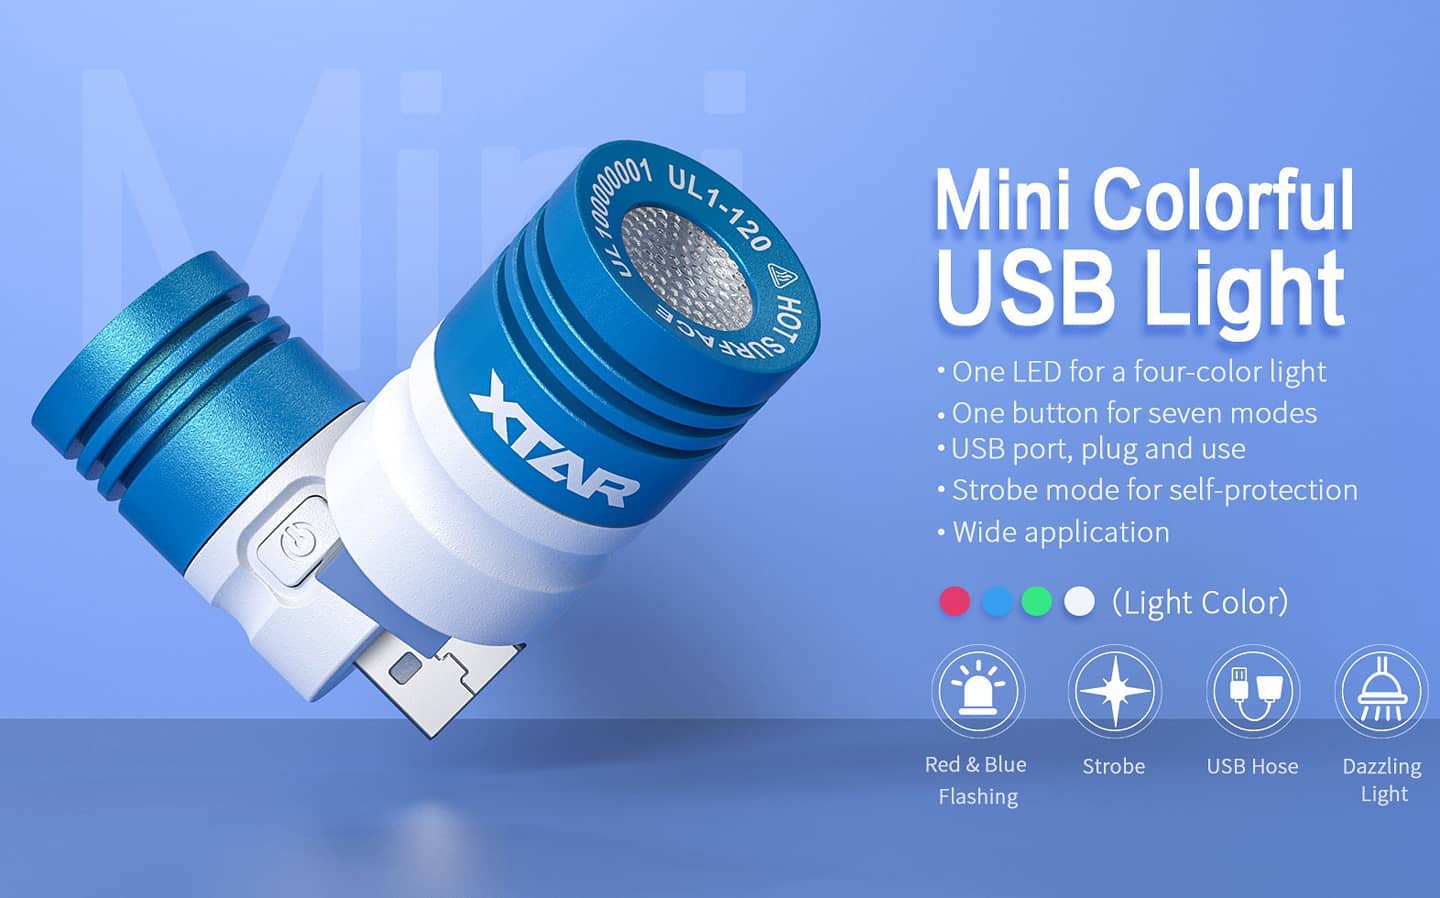 New XTAR UL1-120 USB EDC Light Flashlight Torch